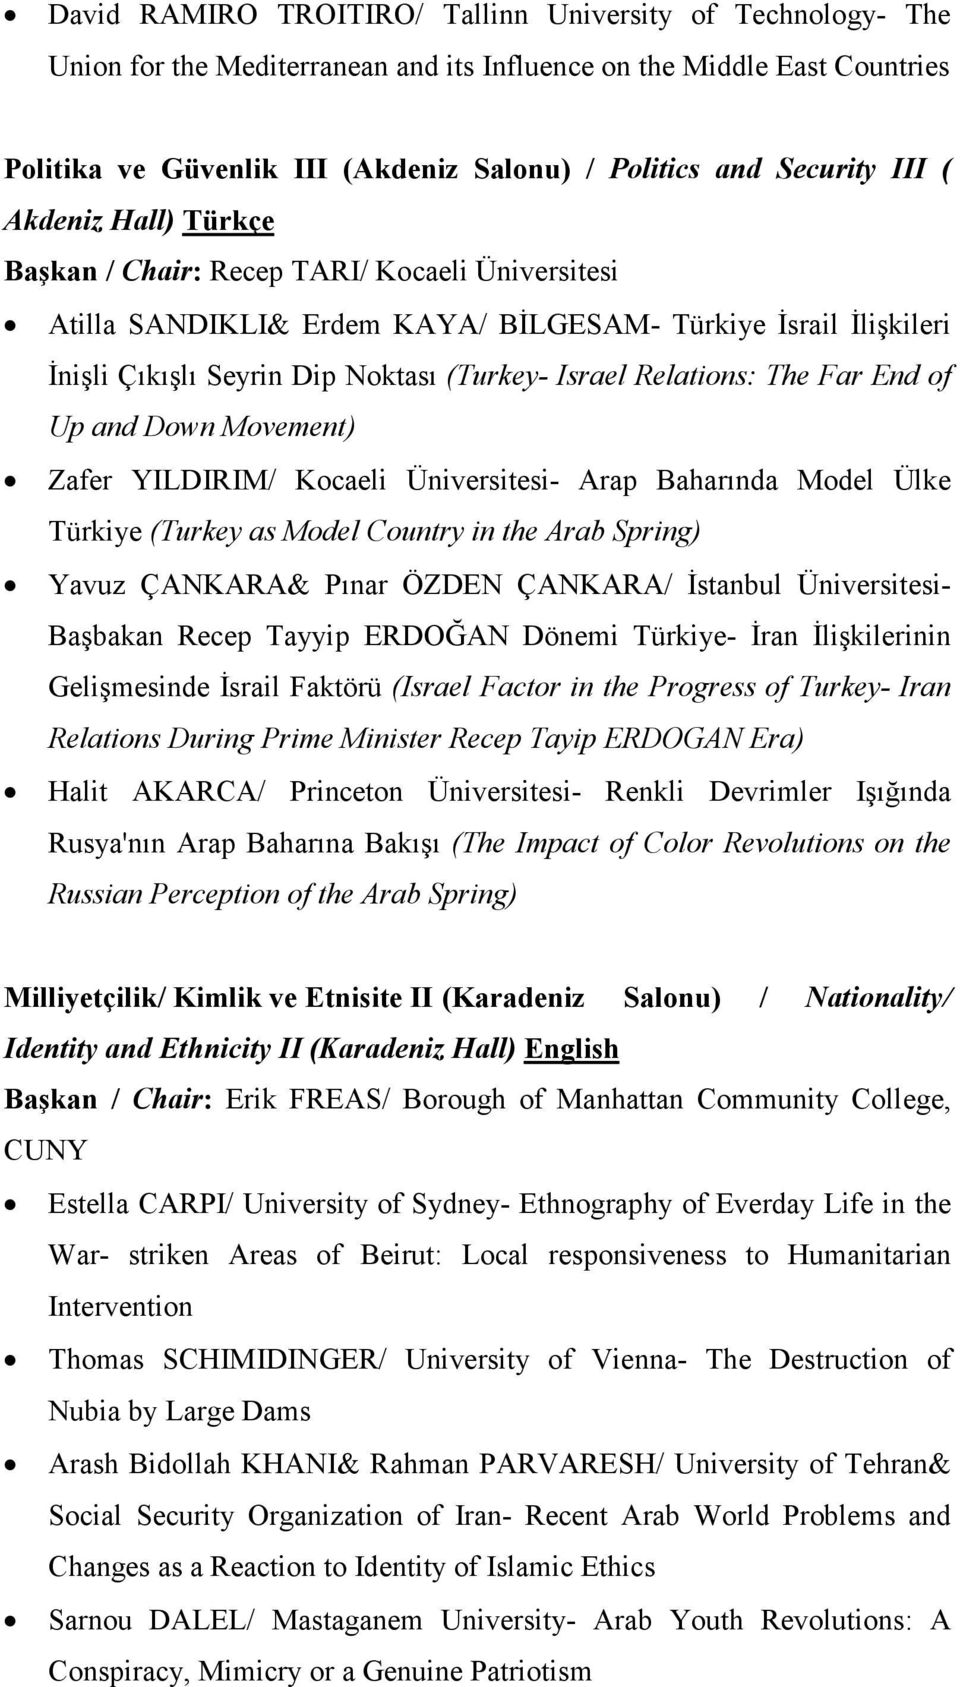 Relations: The Far End of Up and Down Movement) Zafer YILDIRIM/ Kocaeli Üniversitesi- Arap Baharında Model Ülke Türkiye (Turkey as Model Country in the Arab Spring) Yavuz ÇANKARA& Pınar ÖZDEN